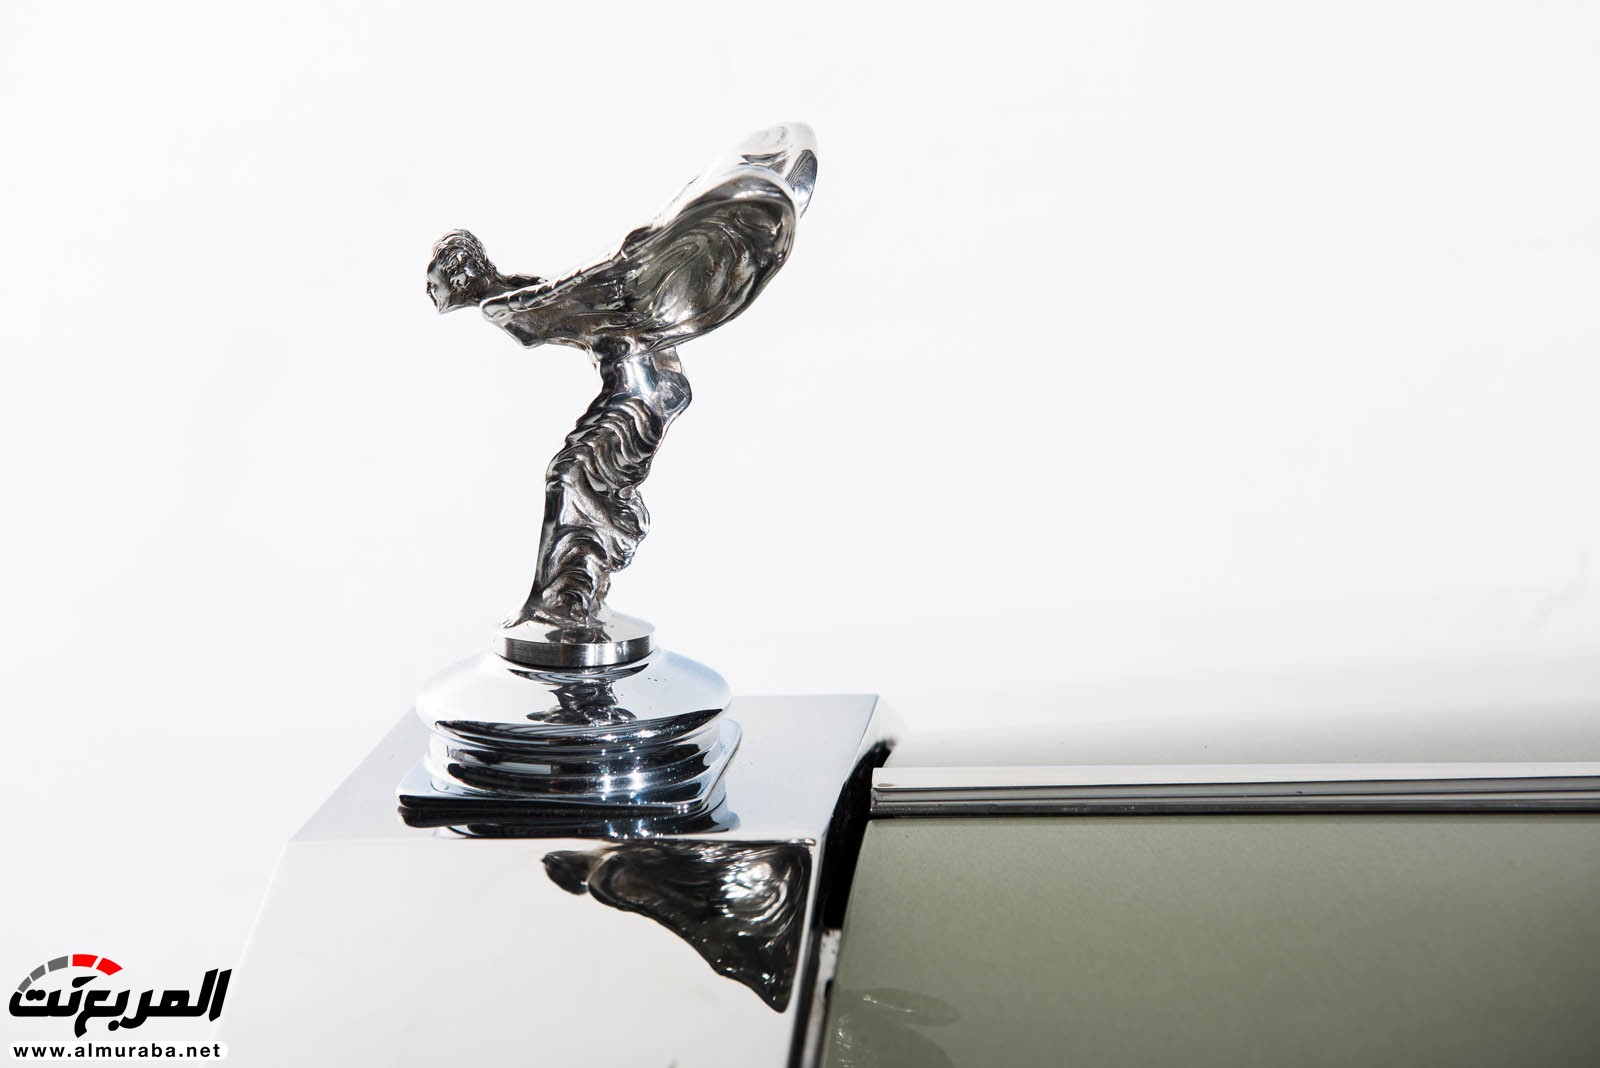 "رولز رويس" سيلفر كلاود 1959 ذات هيكلة الواجن تتوجه لتباع في مزاد عالمي Rolls-Royce Silver Cloud 70